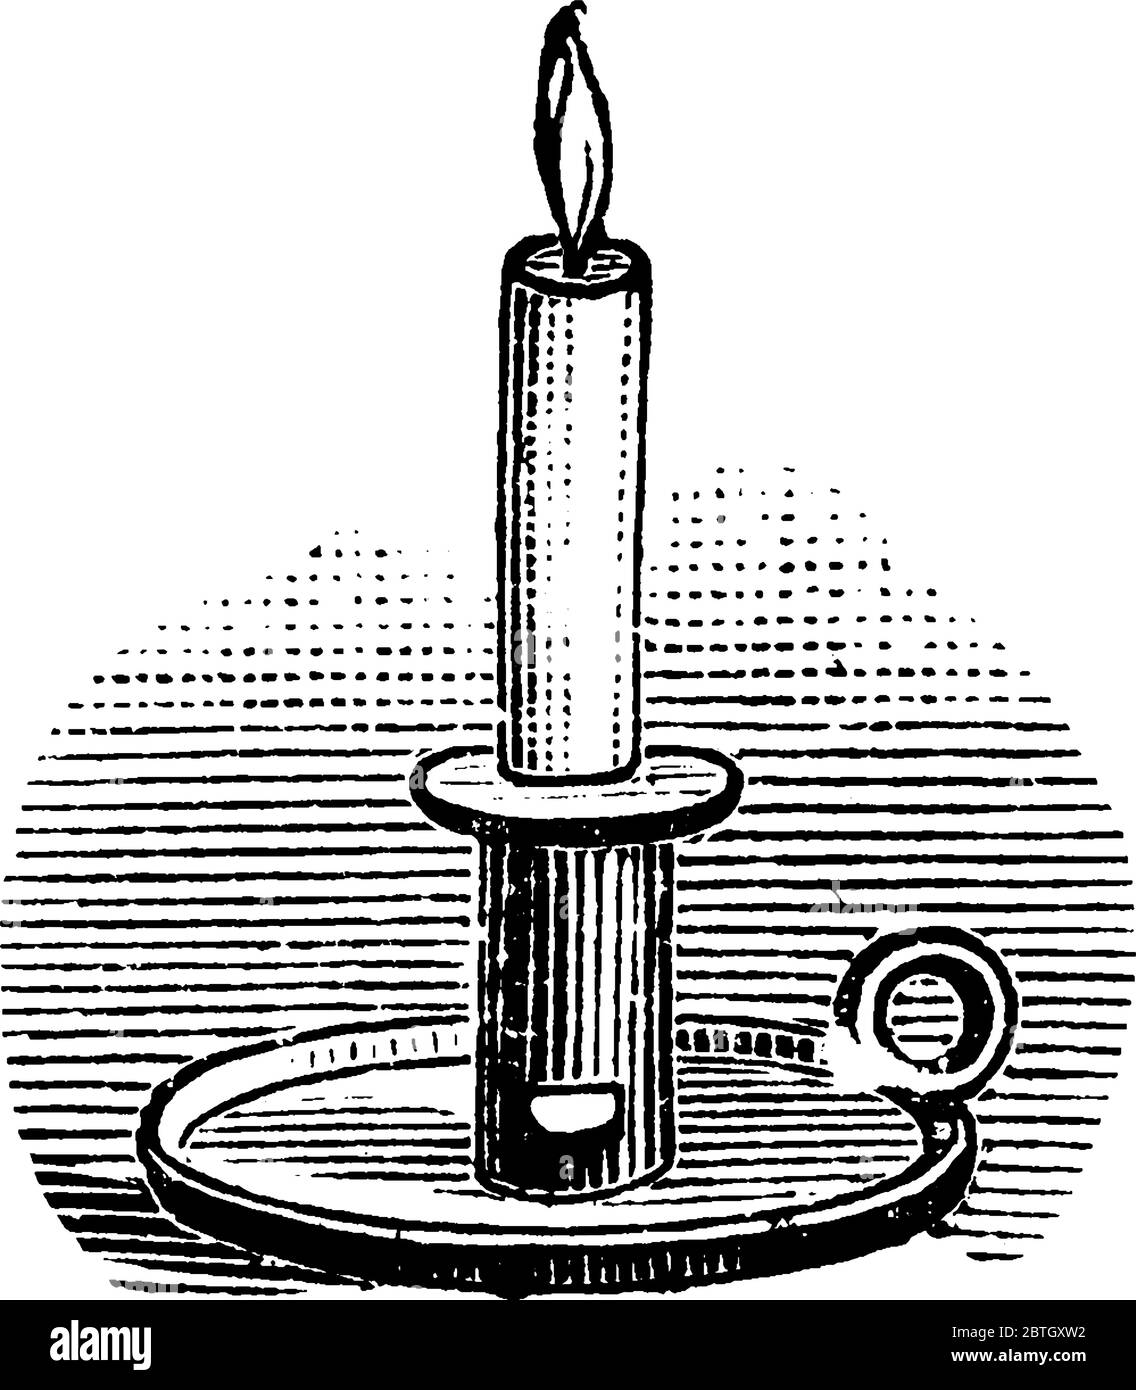 Une bougie avec support, dessin de ligne vintage ou illustration de gravure  Image Vectorielle Stock - Alamy